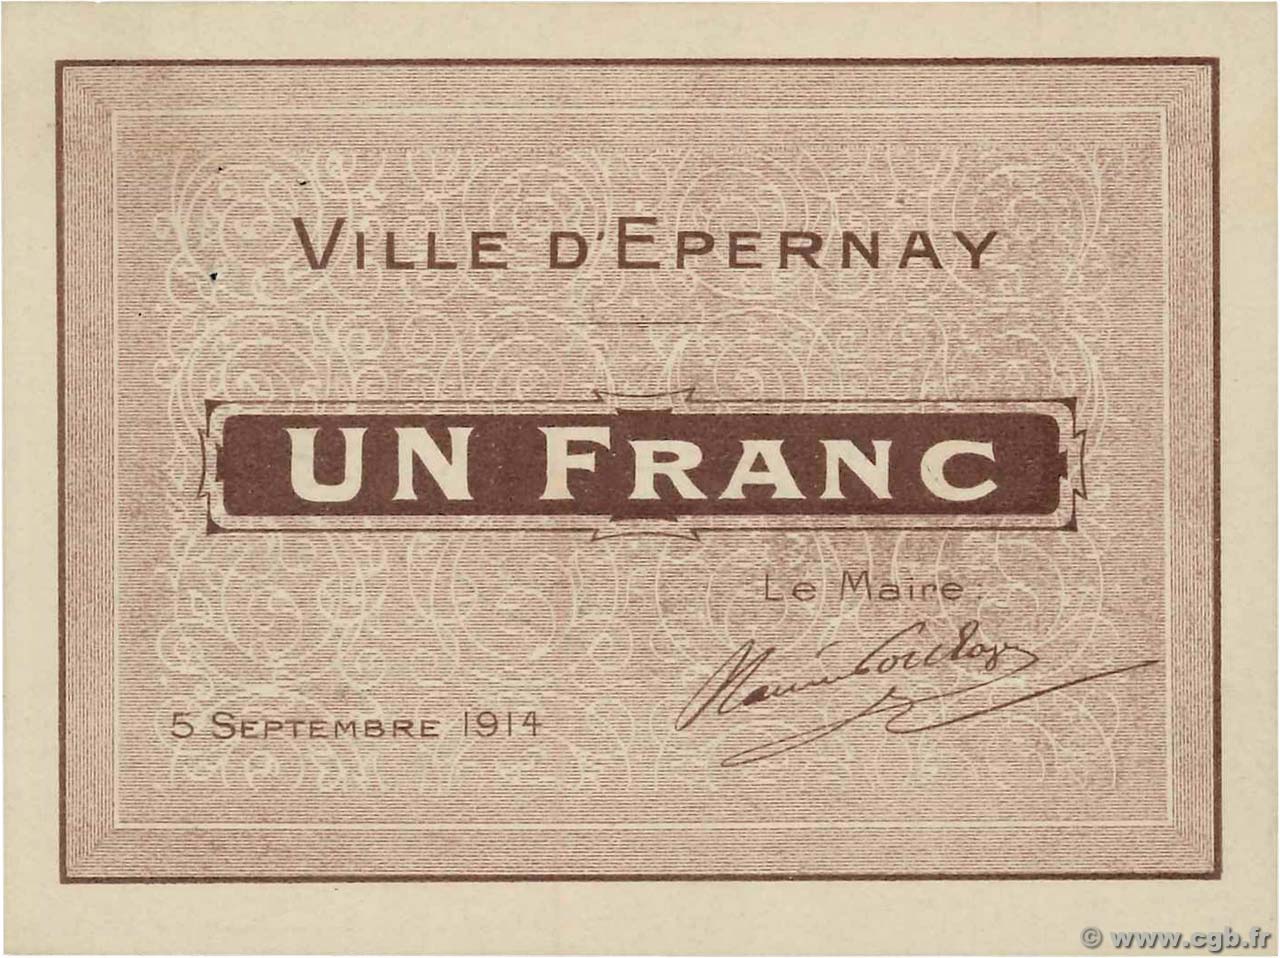 1 Franc FRANCE regionalismo y varios Epernay 1914 JP.51-16 SC